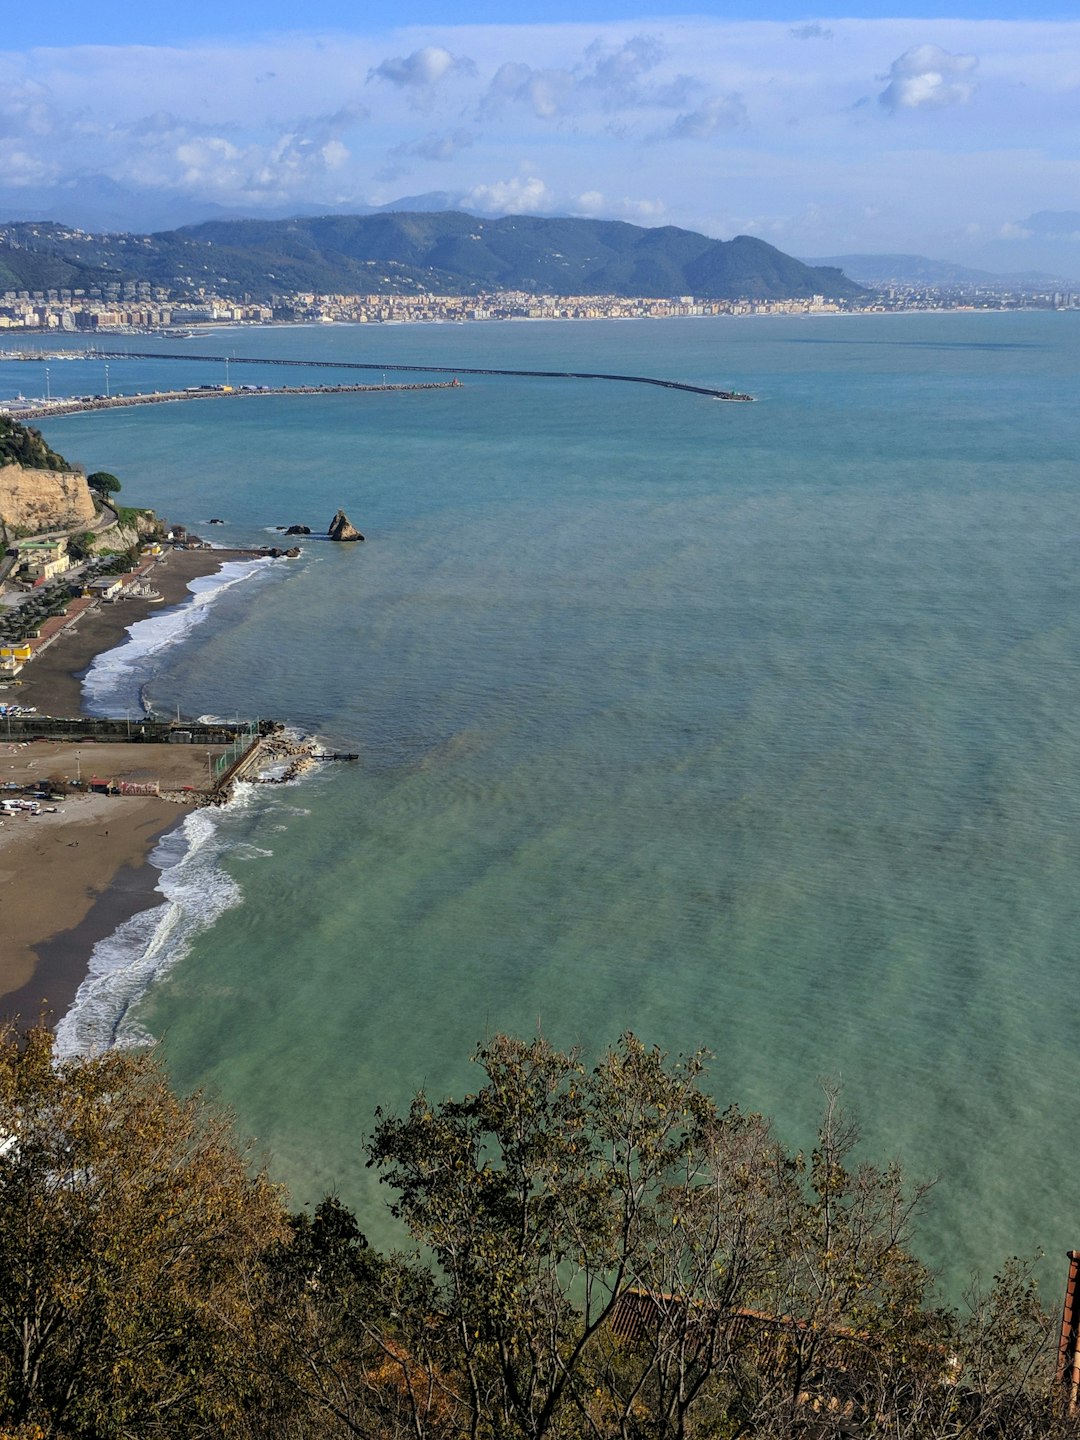 Beach photo spot Vietri sul Mare Salerno